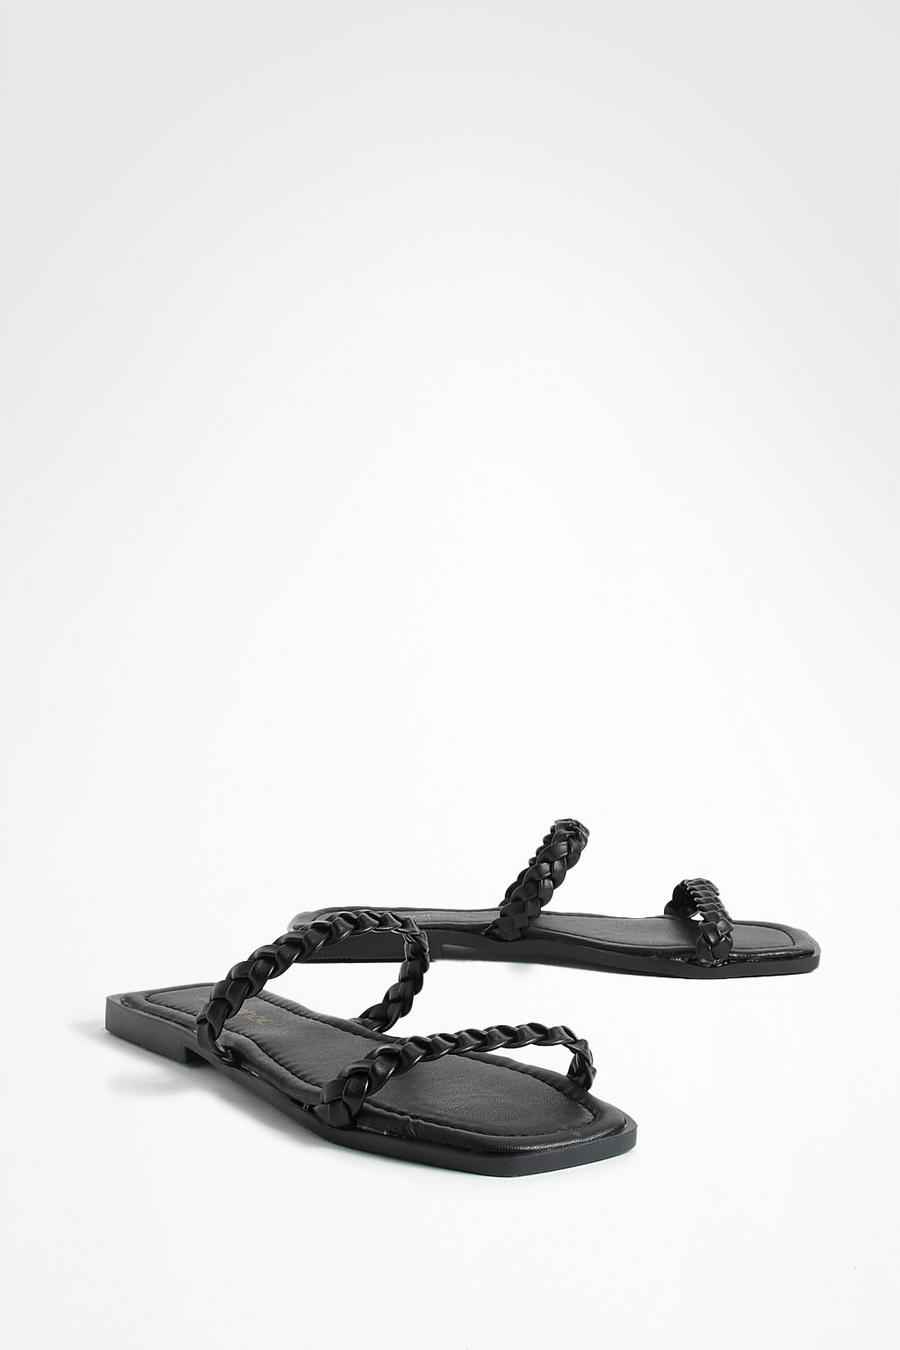 Sandali a punta quadrata con doppia fascetta intrecciata, Black nero